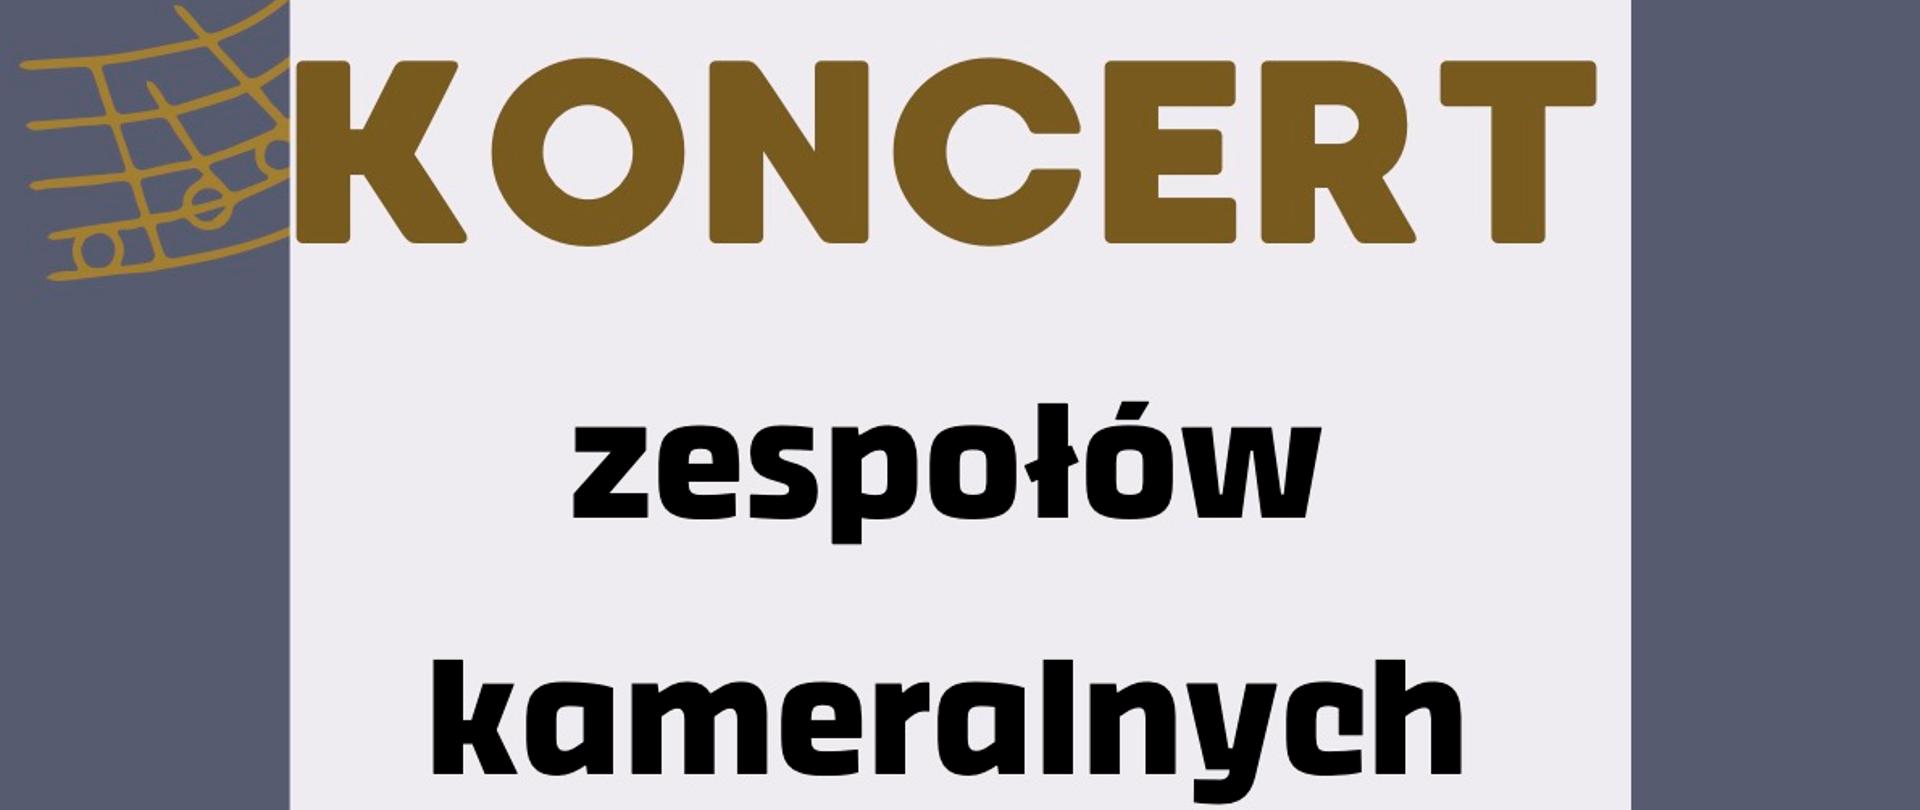 Plakat, ramka koloru szarego, napis "koncert zespołów kameralnych PSM II st."
Na ramce grafiki pięciolinni oraz nut